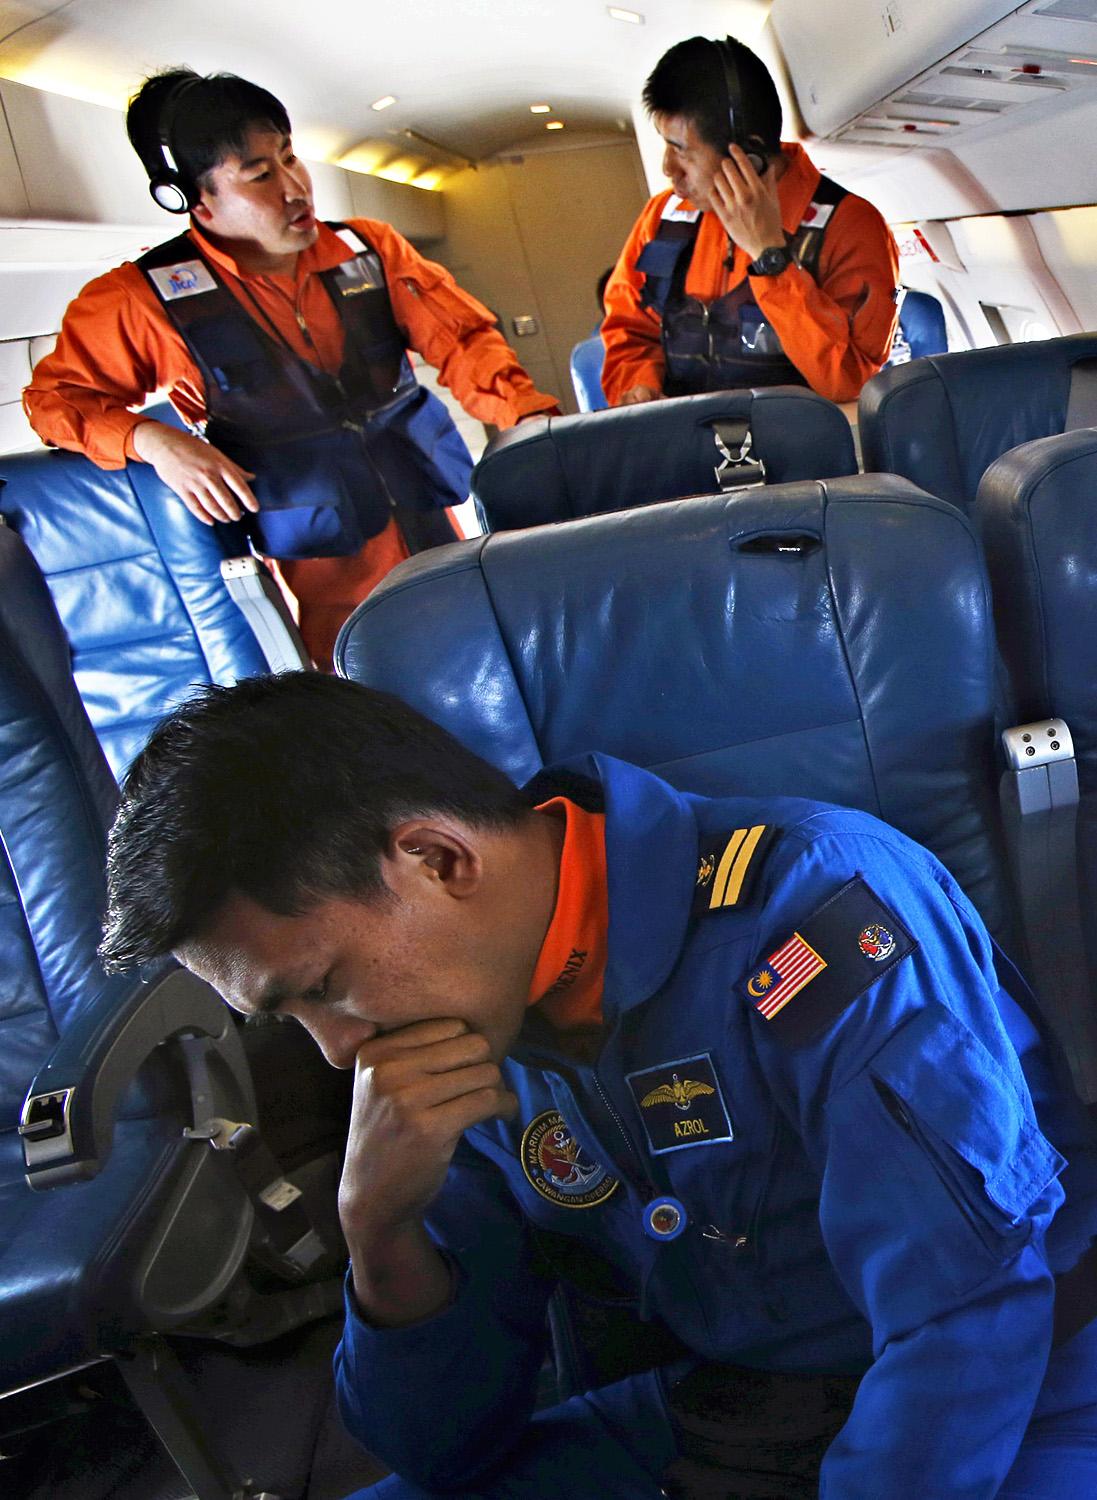 A kutatásban tucatnyi ország vesz részt. Ezen a képen egy maláj pilóta beszélget két japán kollégával